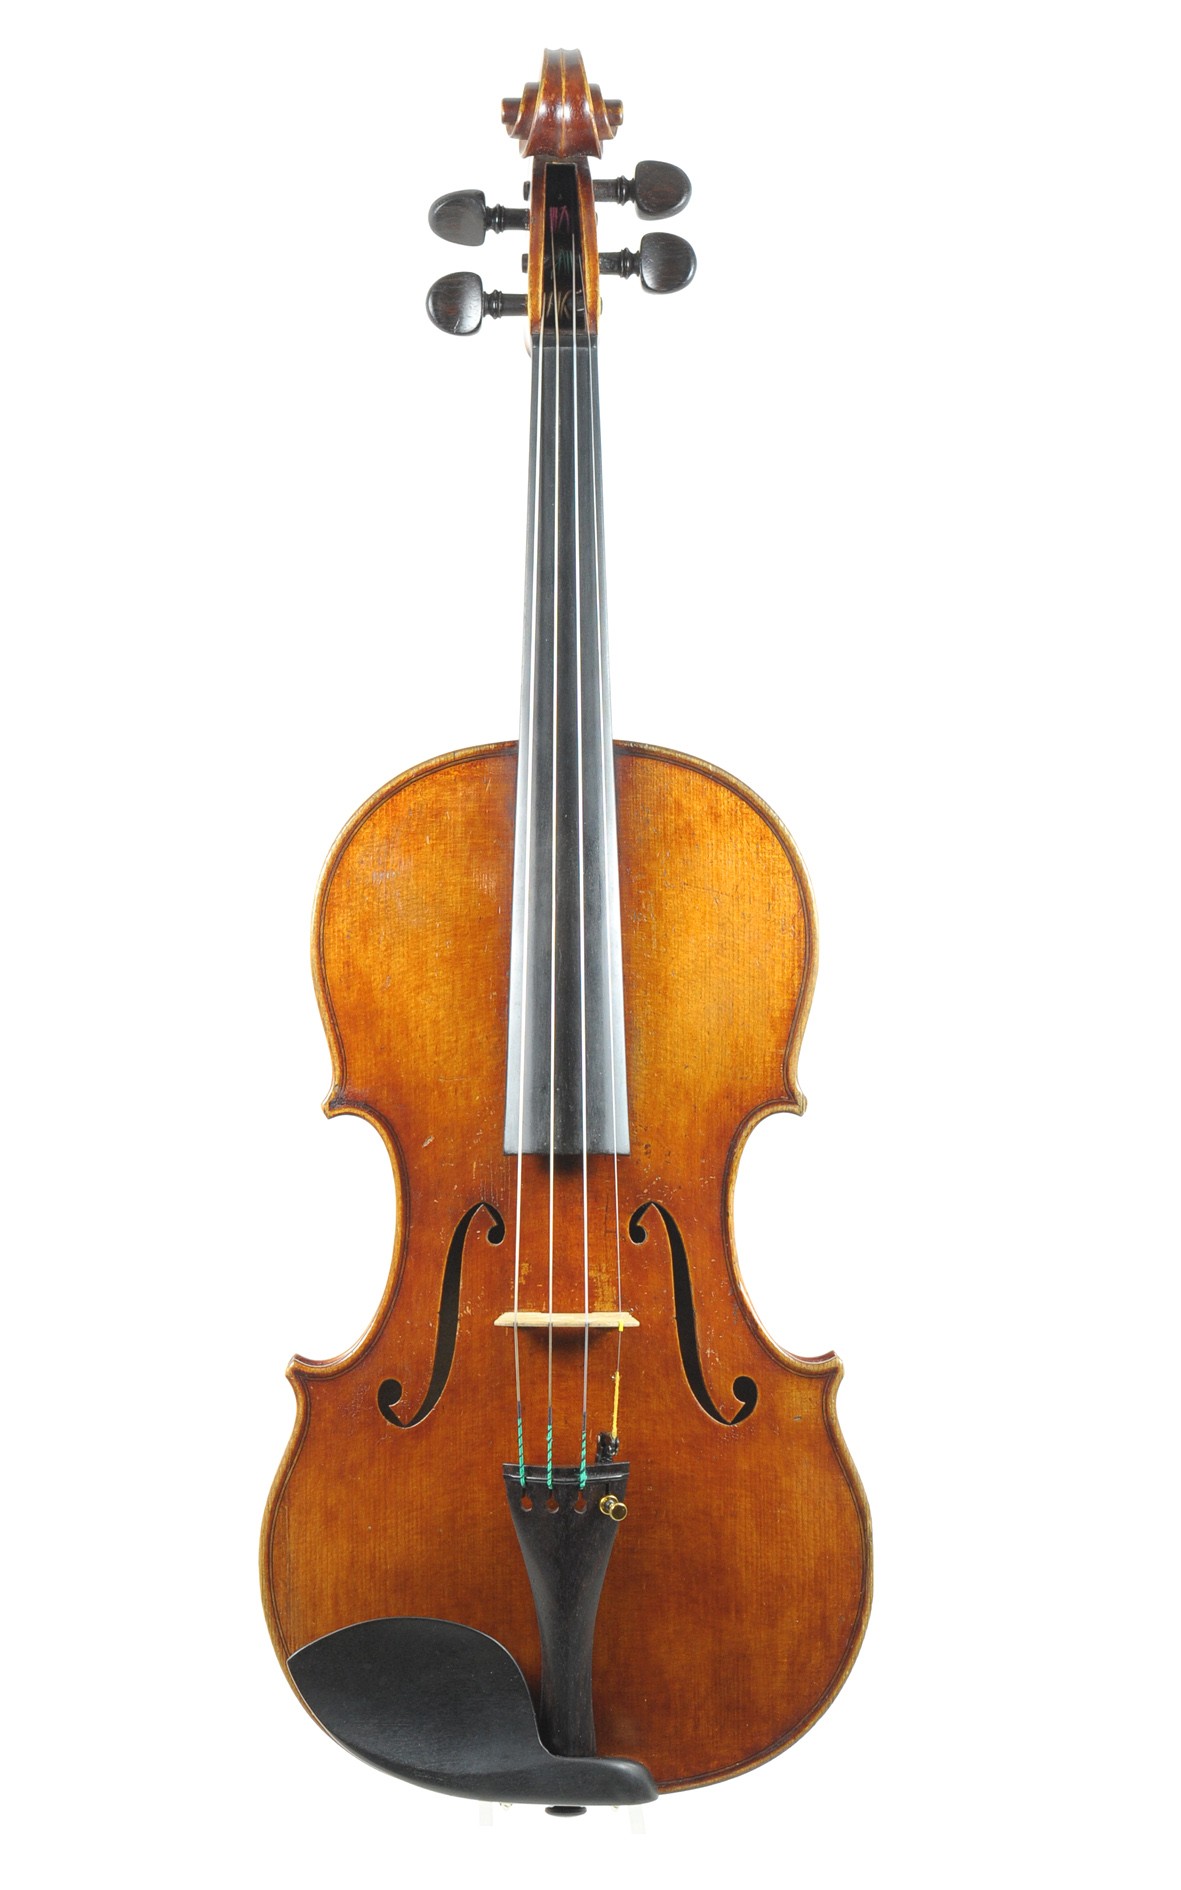 Master violin by Paul Kleinlein, Emden, 1938